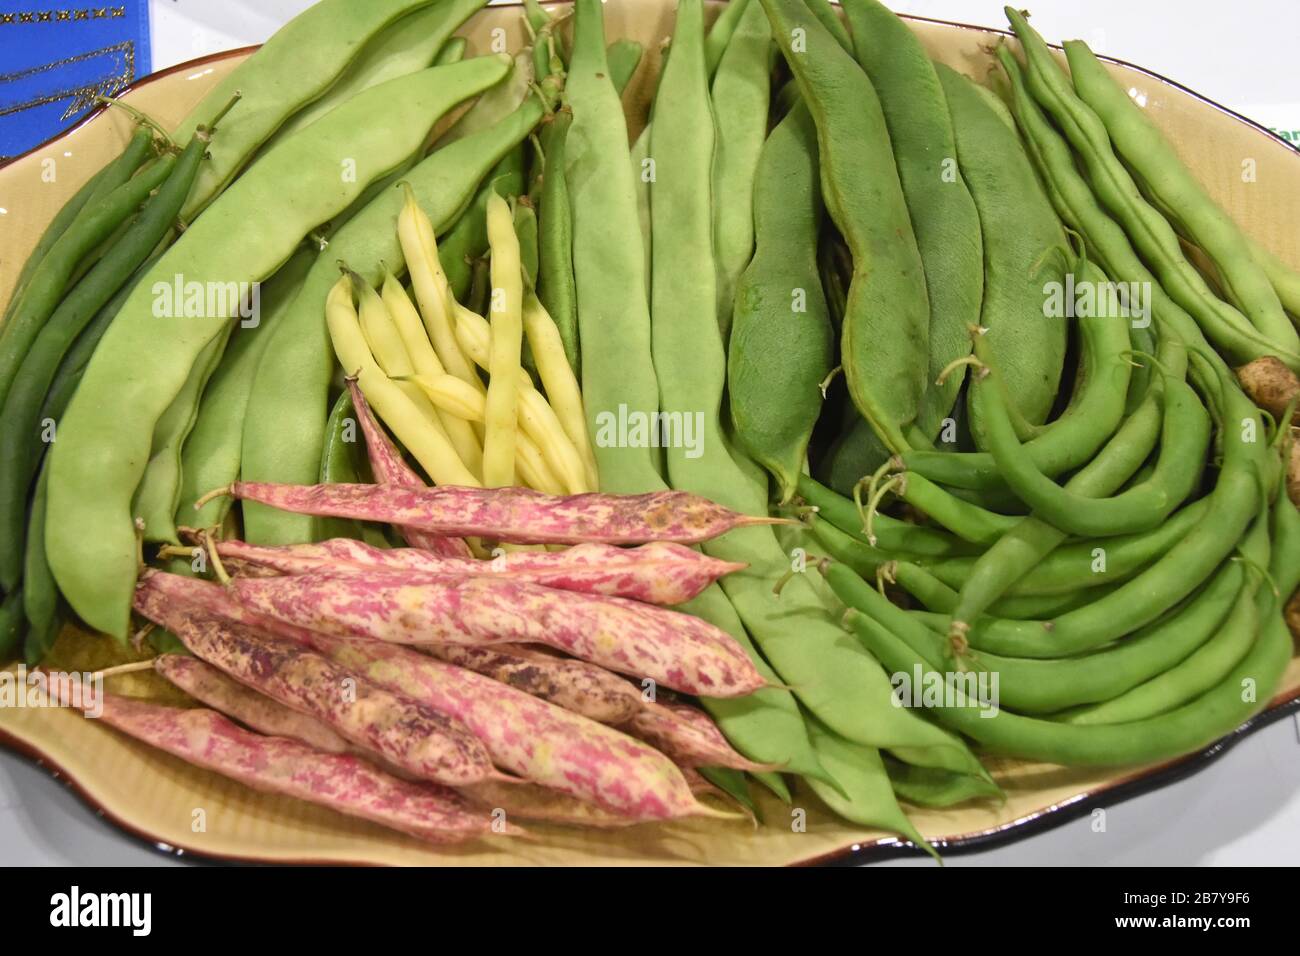 Peas variety Stock Photo